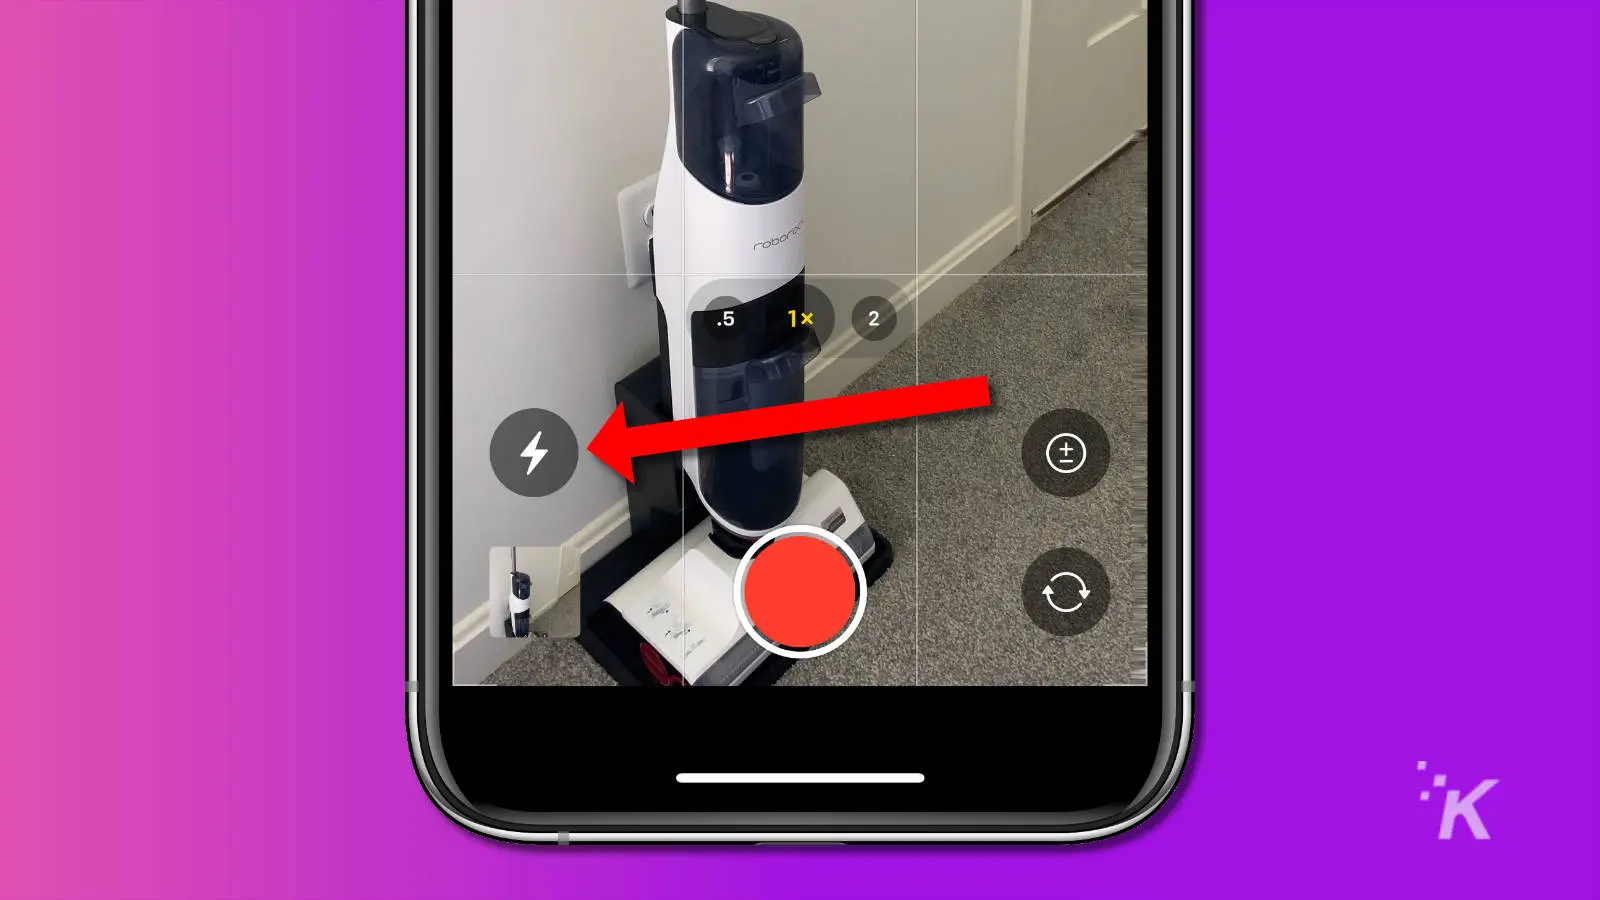 captura de pantalla de la aplicación de la cámara del iPhone que muestra el icono de flash